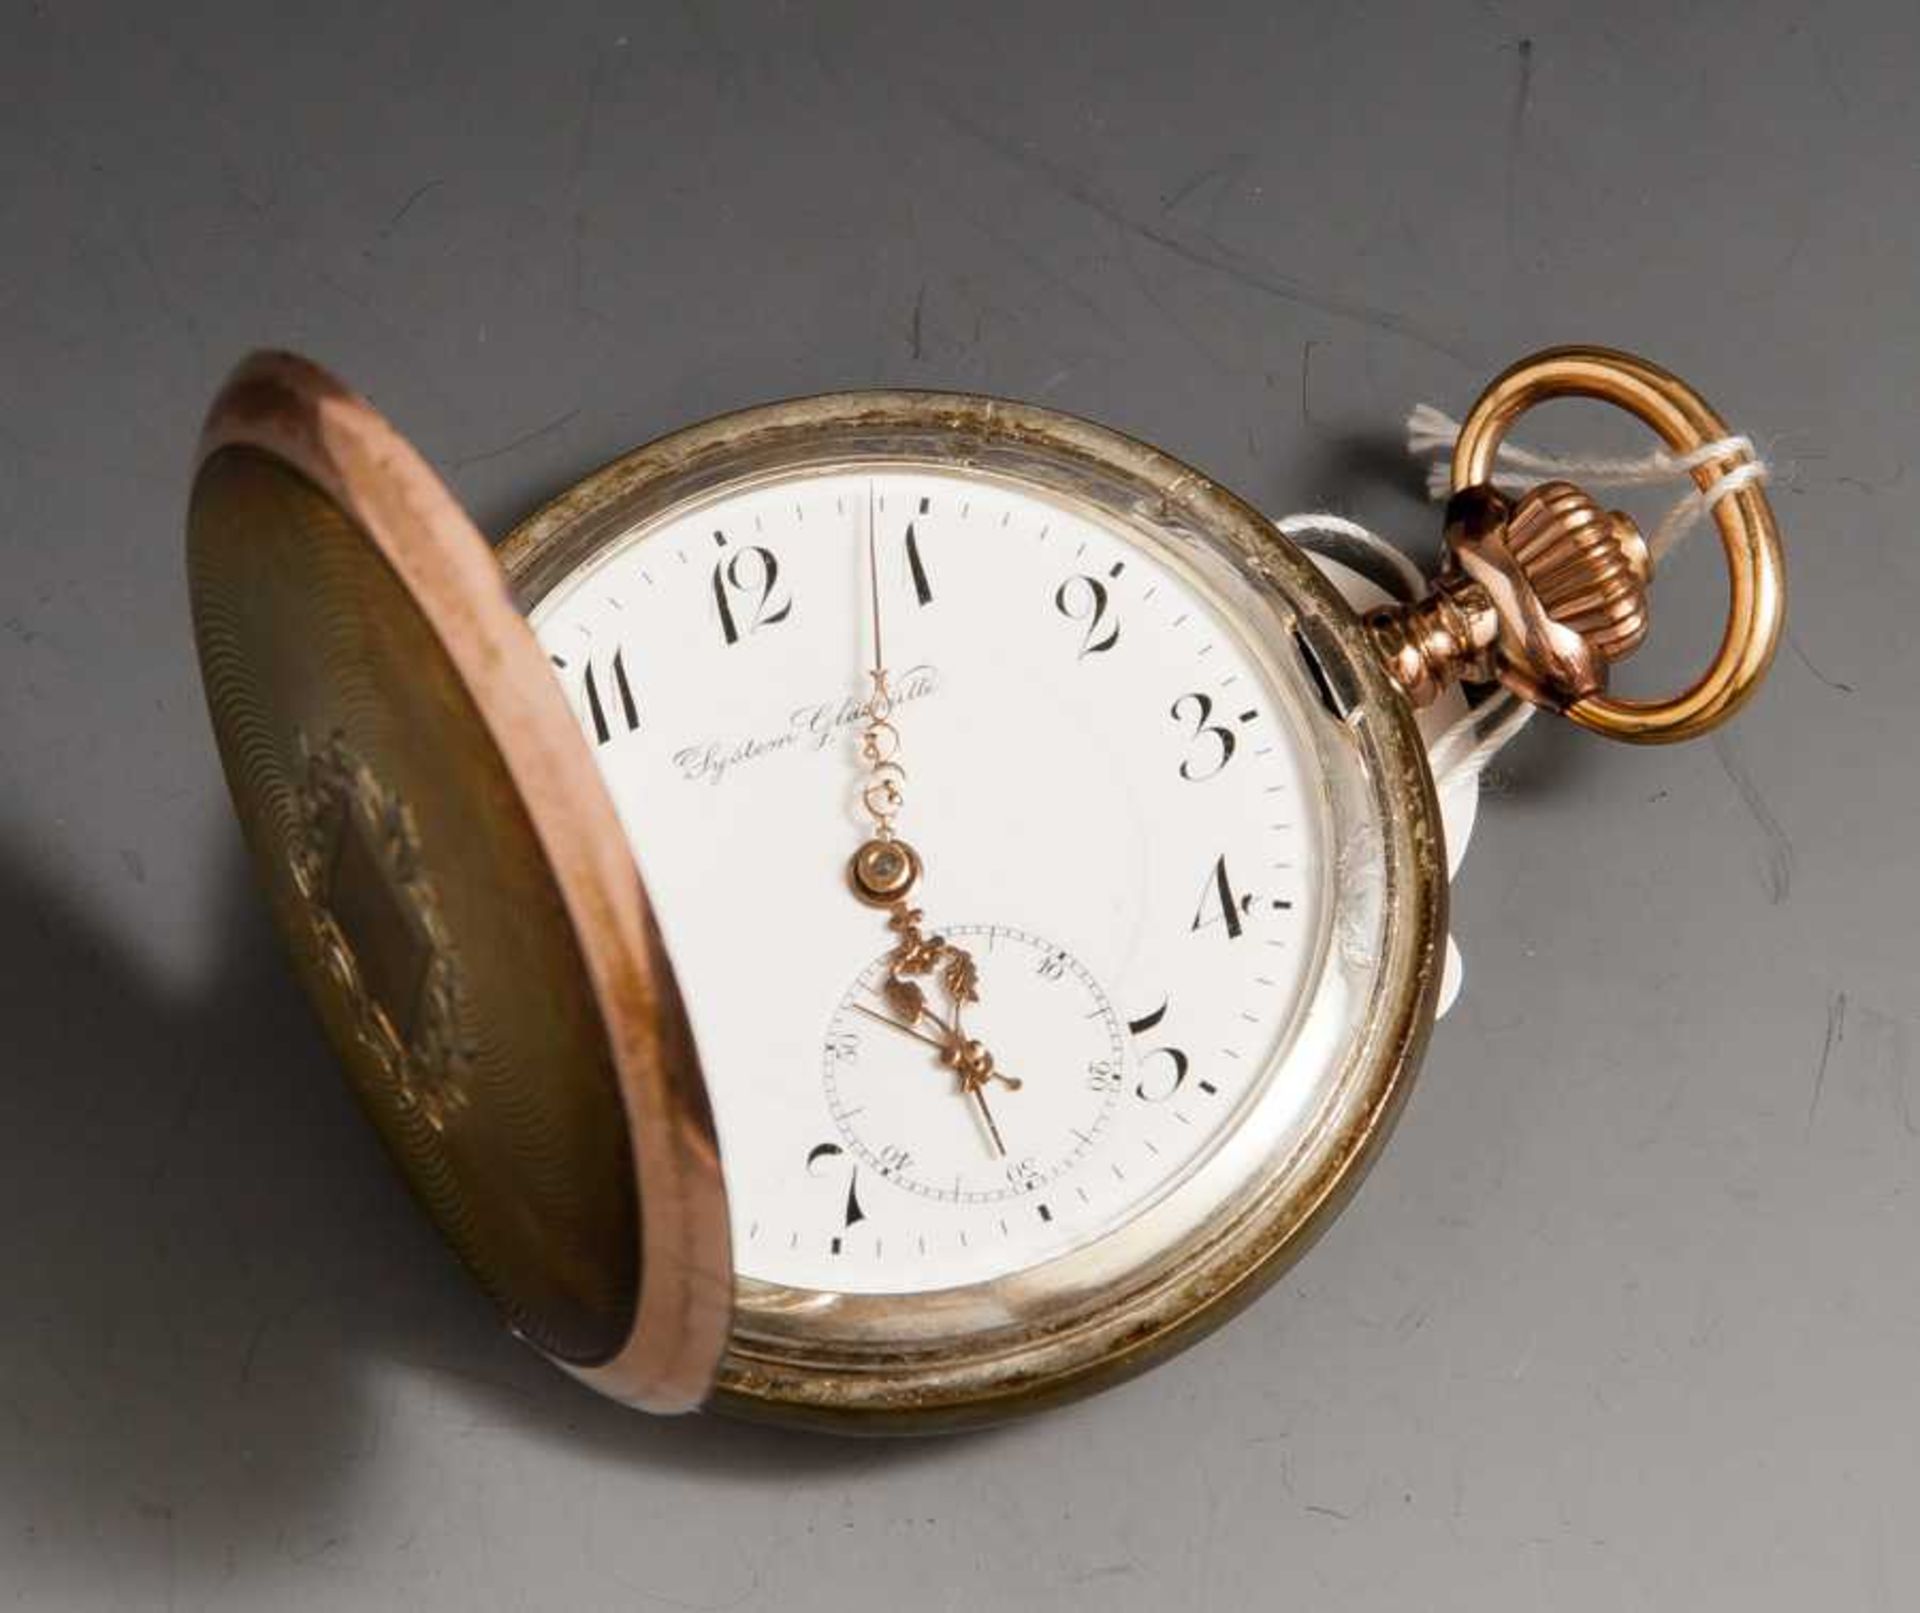 Taschenuhr, um 1900, System Glashütte, Silber/Gold. Uhrwerk läuft.